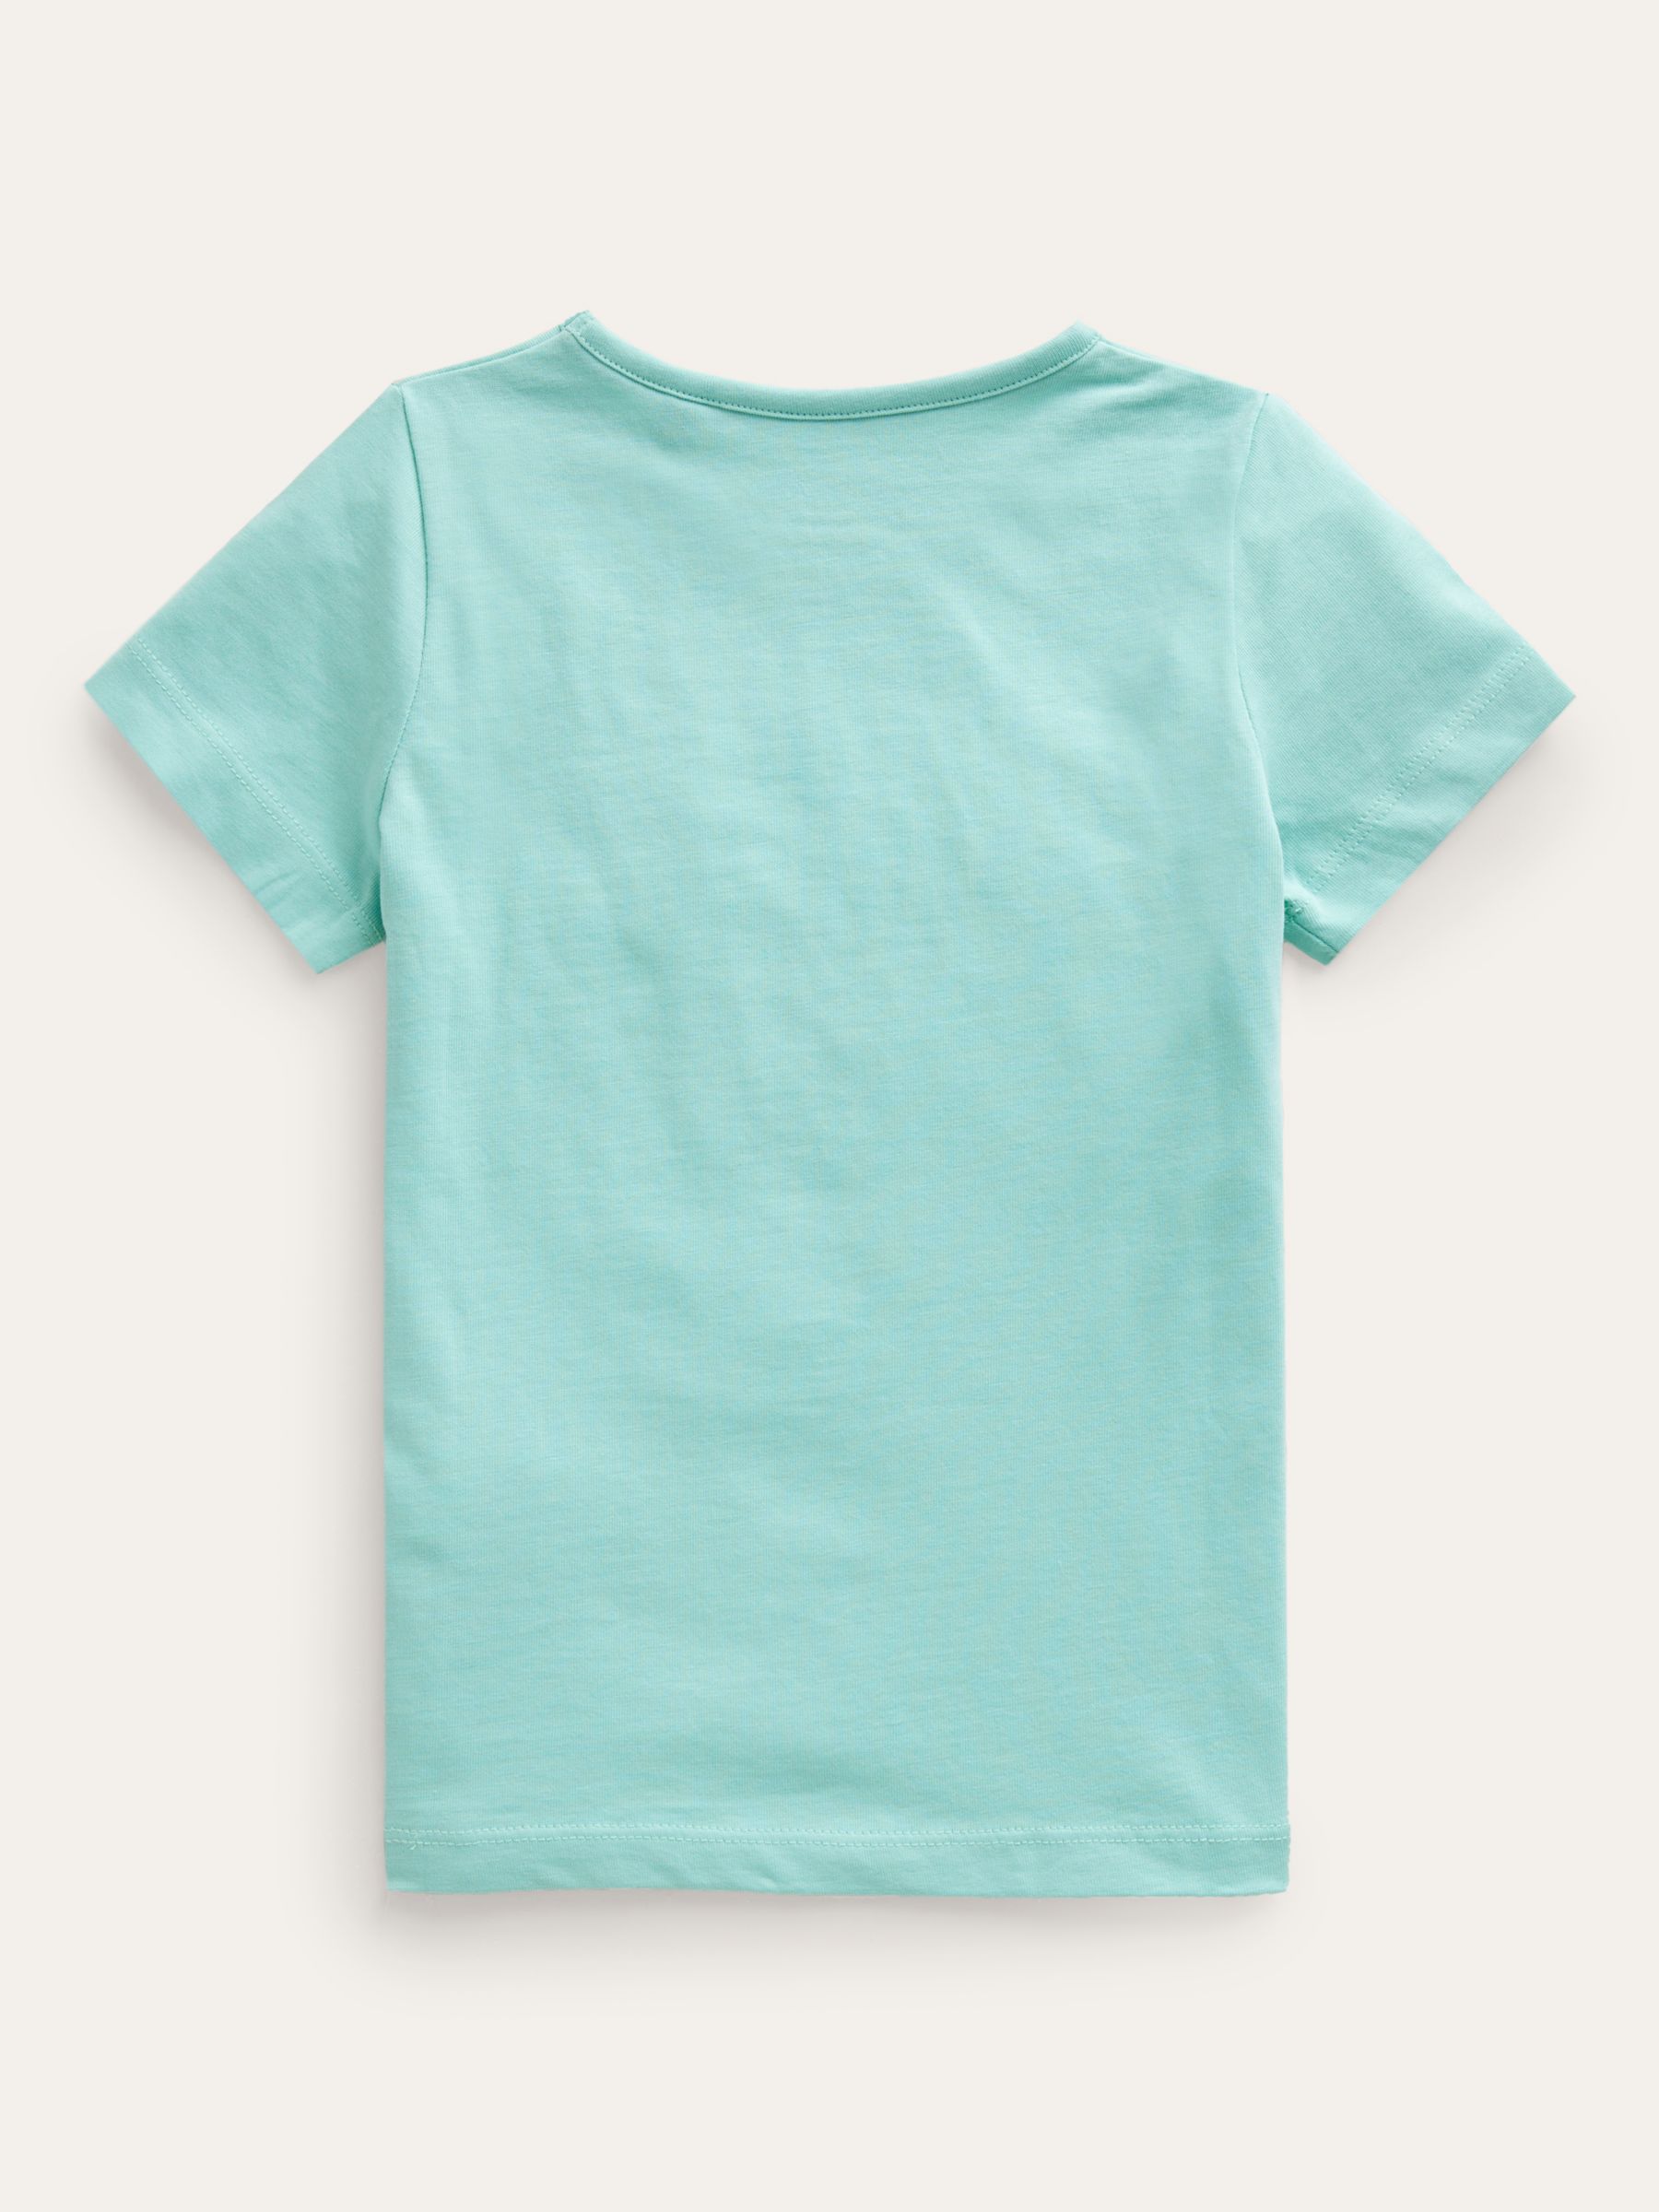 Mini Boden Kids' Tutti Al Mare Fun T-Shirt, Cream/Multi, 3-4Y